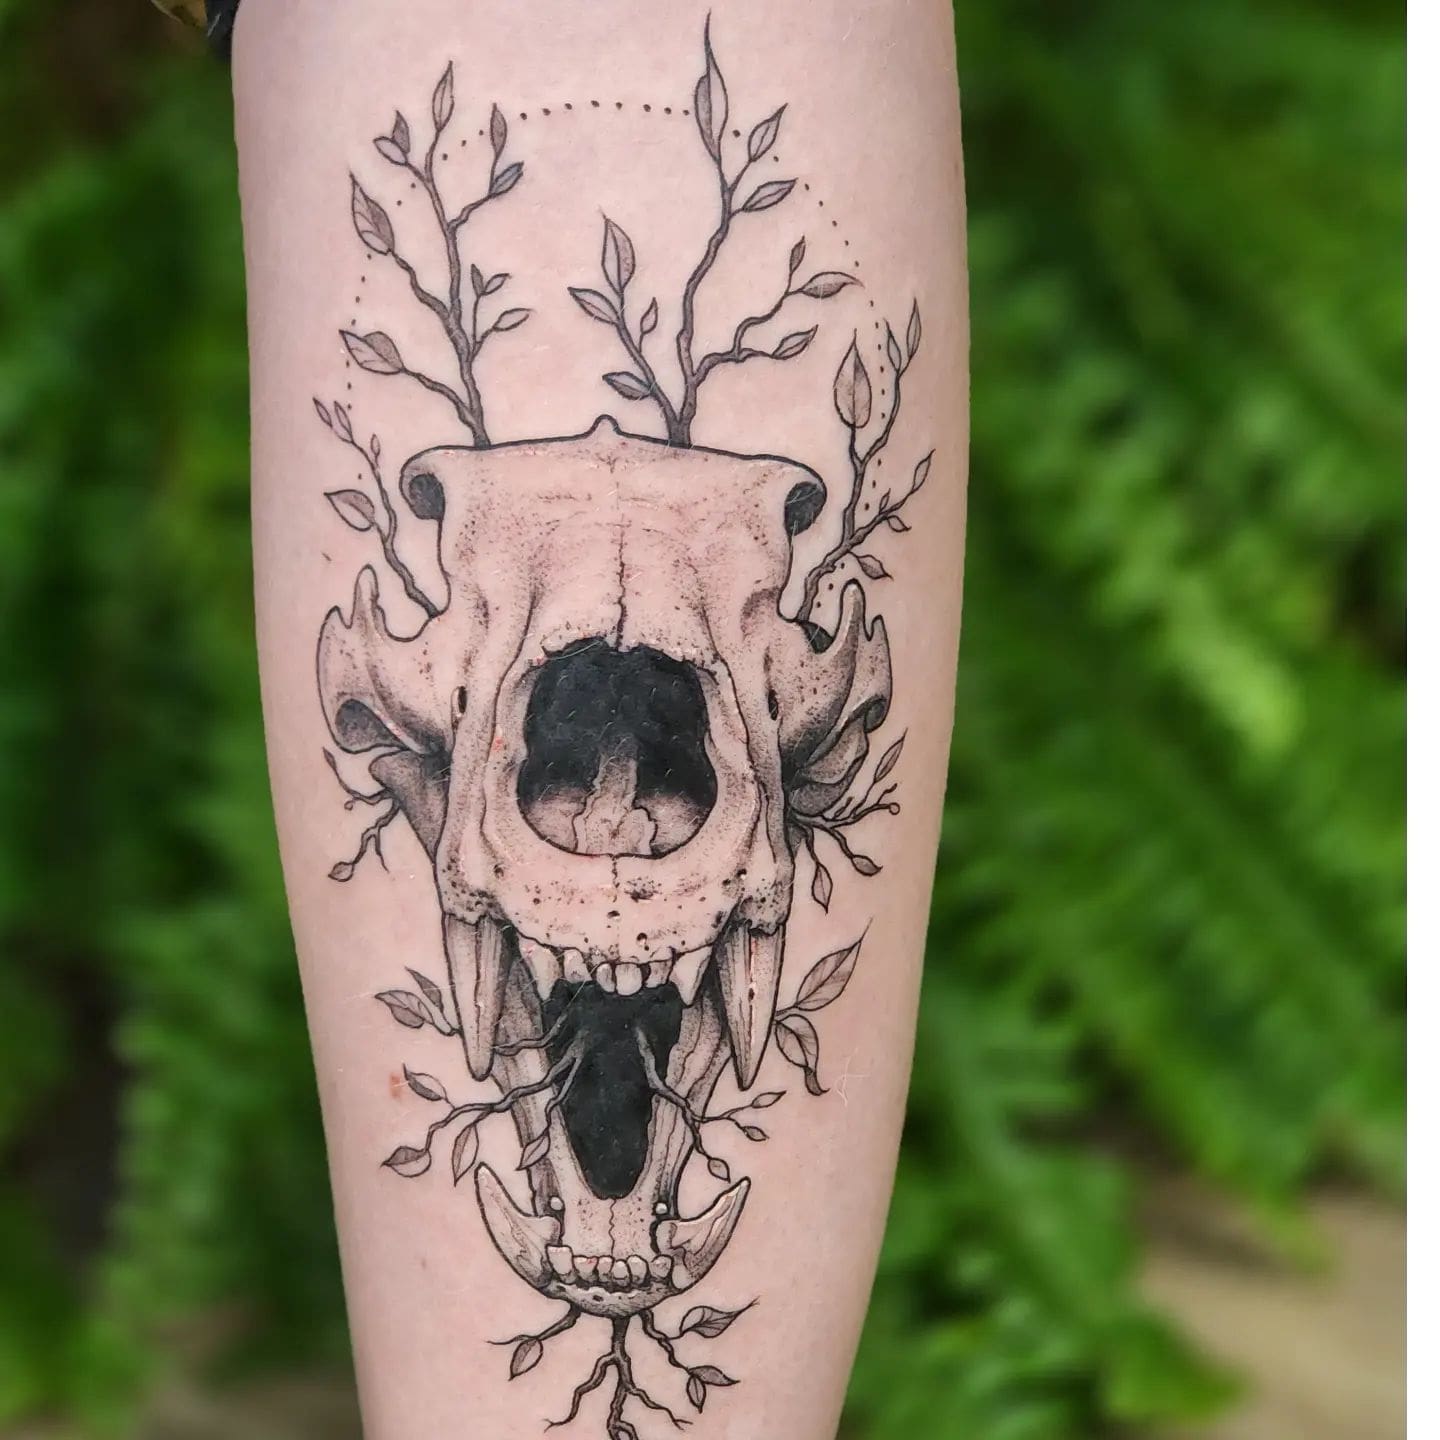 Tatuaż czaszki i drzewa niedźwiedzia